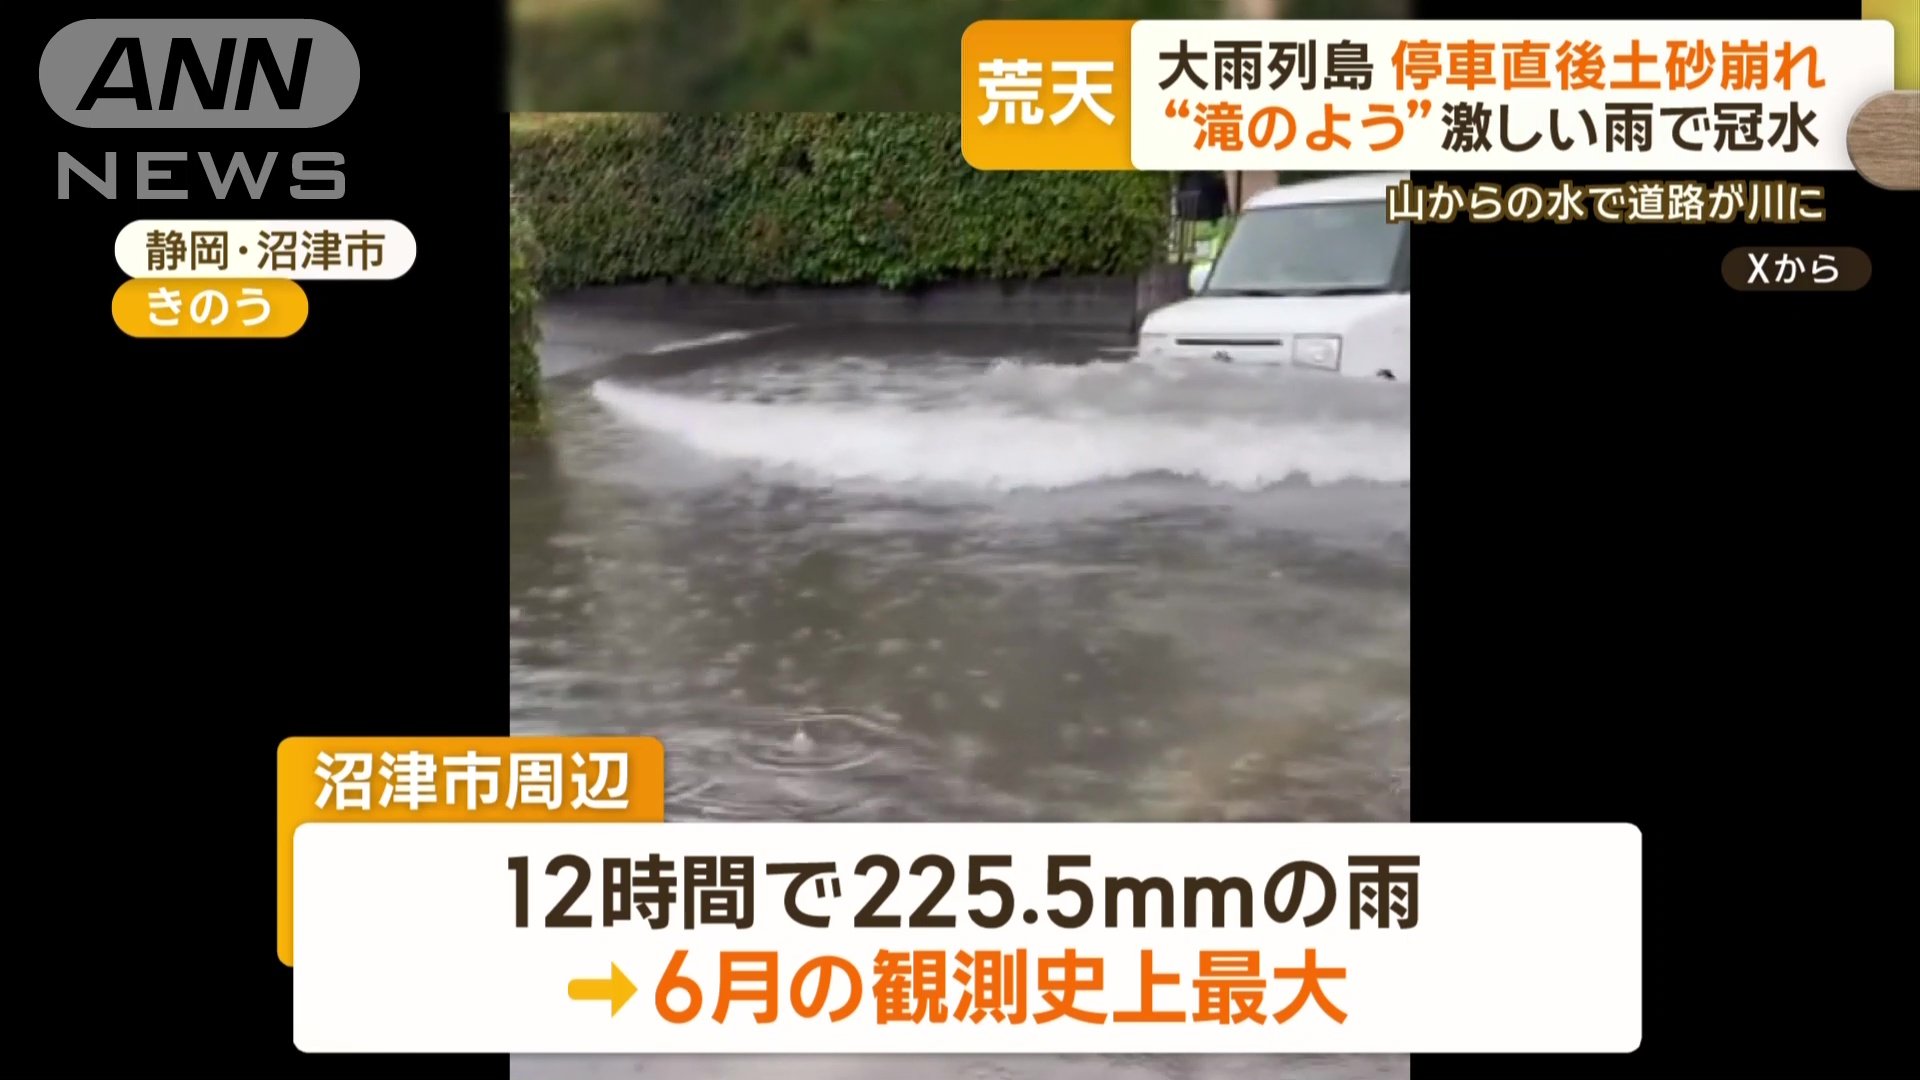 沼津市周辺では6月の観測史上最大雨量